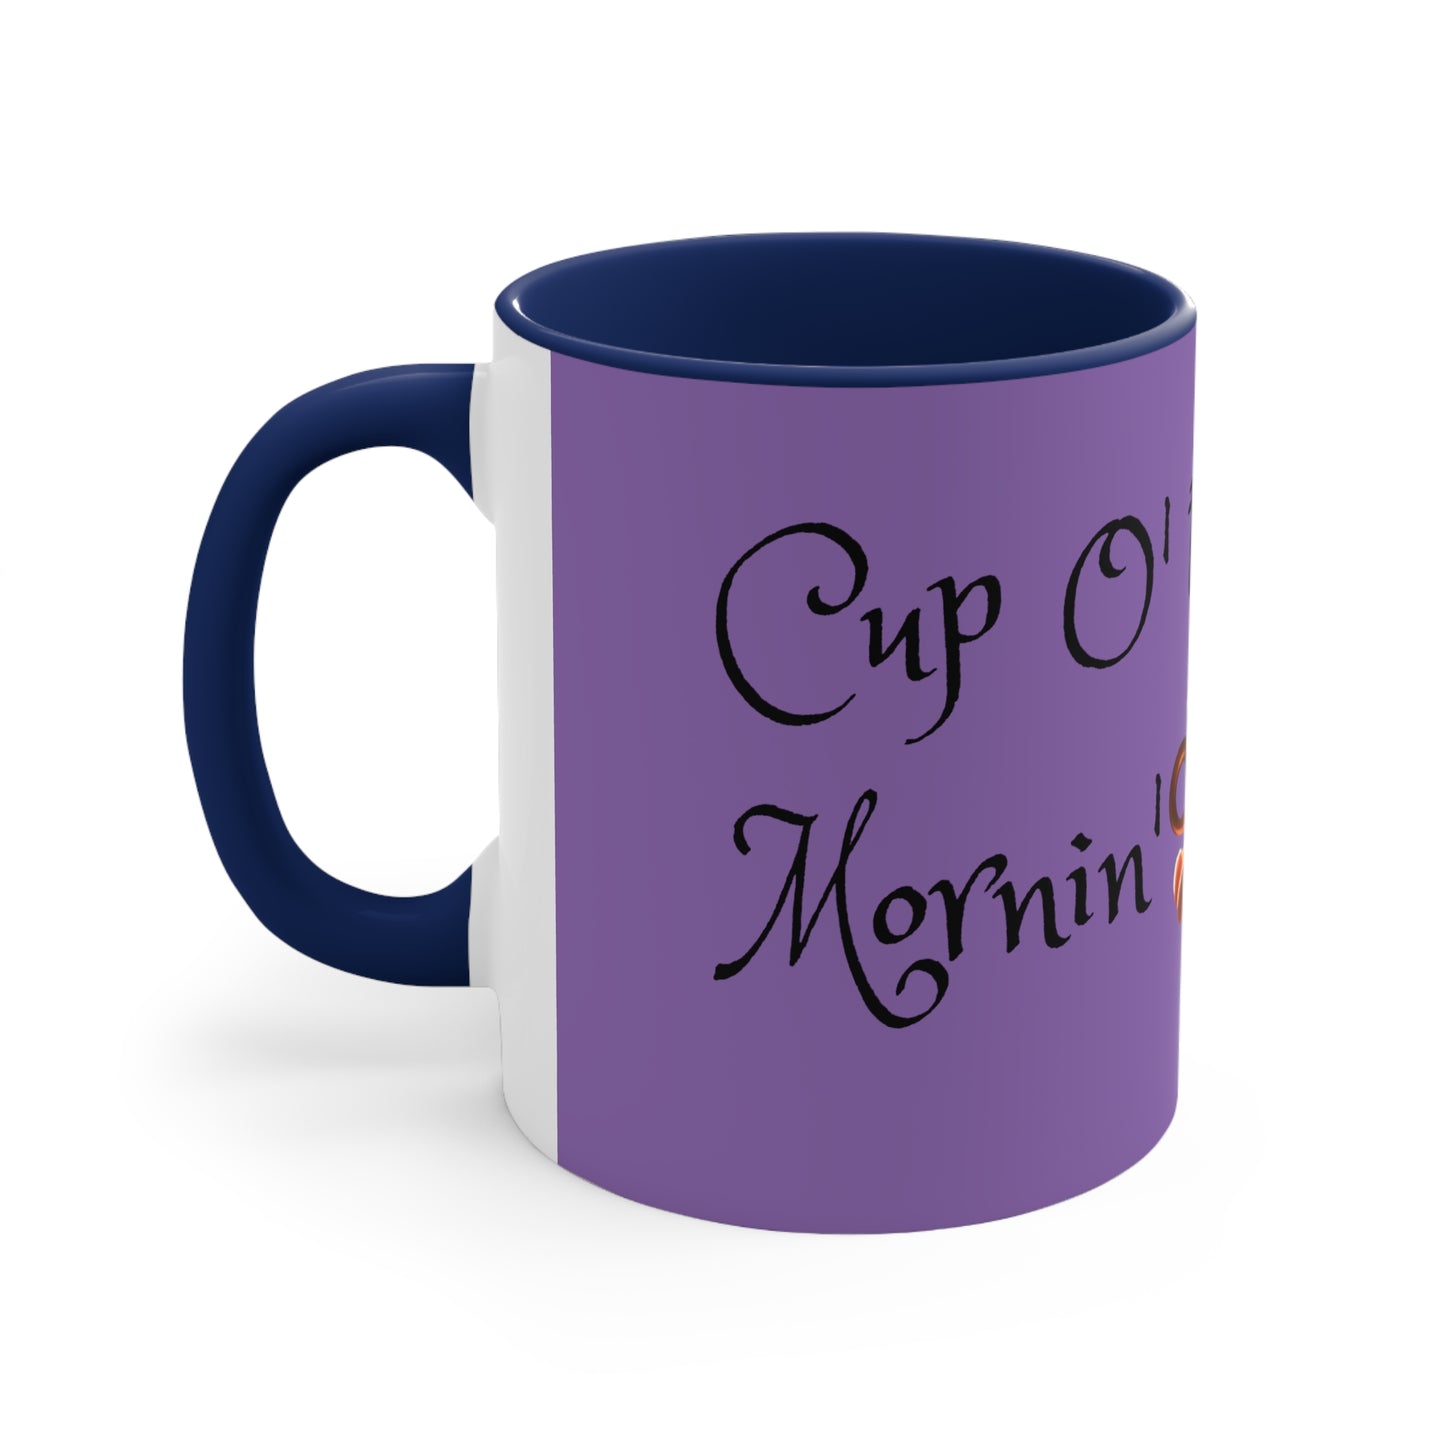 Cup O' The Mornin'